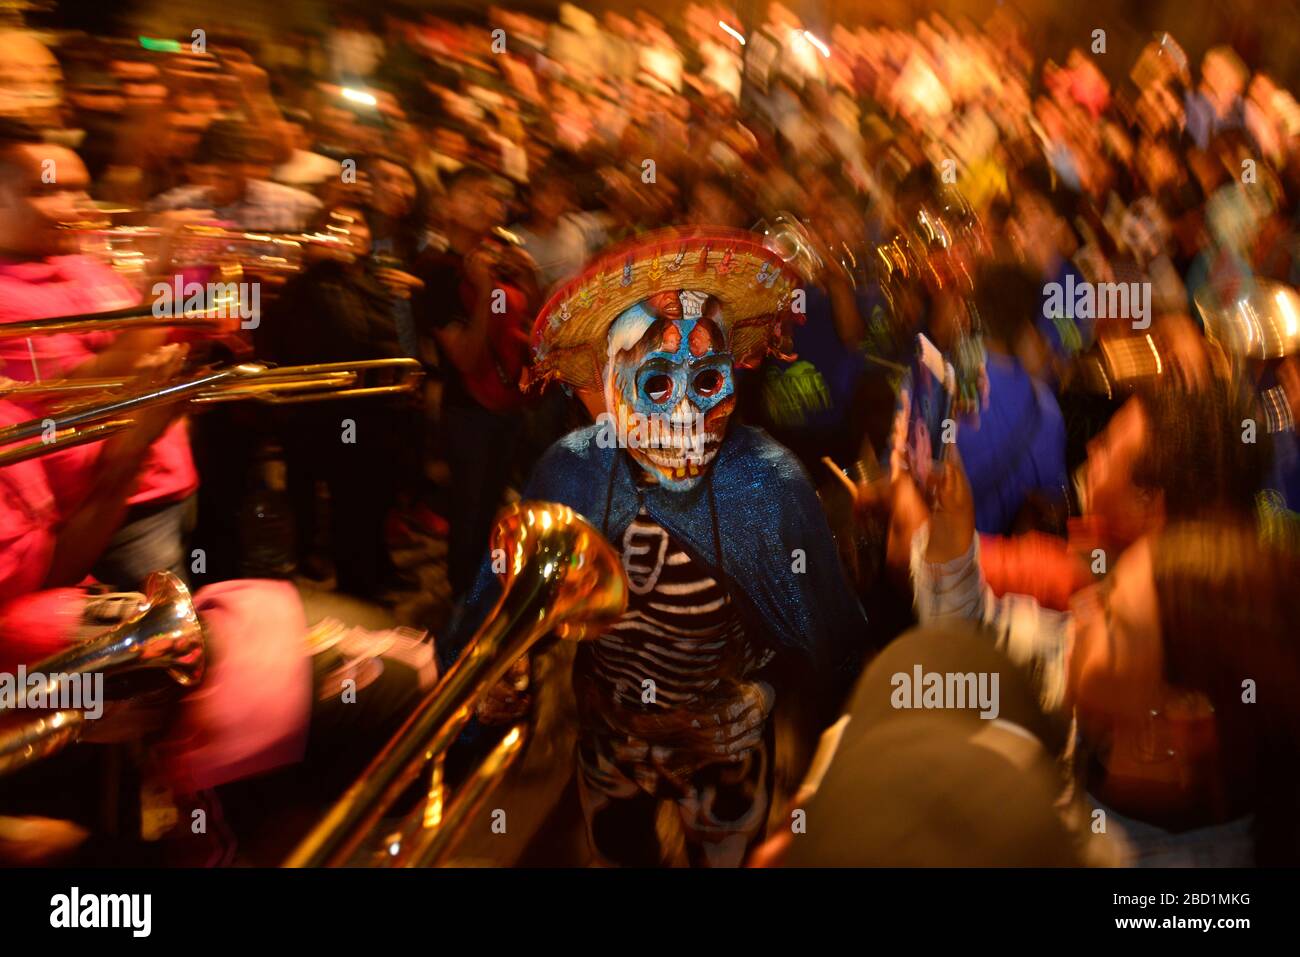 Personnes participant à des comparasas (danses de rue) pendant la célébration de la Journée des morts, Oaxaca City, Oaxaca, Mexique, Amérique du Nord Banque D'Images